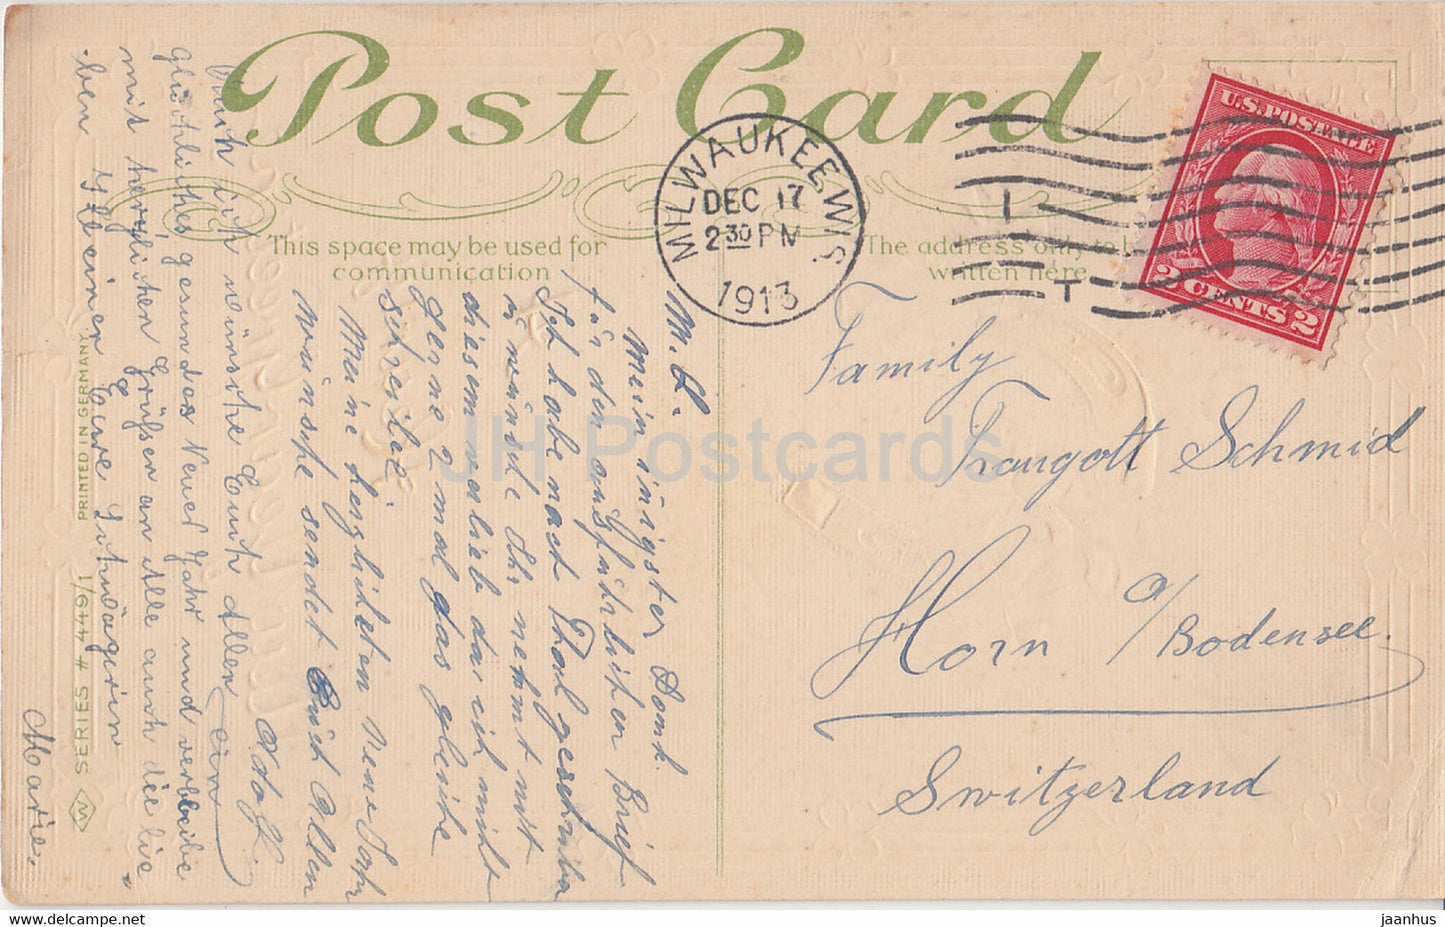 Carte de vœux du Nouvel An - A Hearty New Year Greeting - coccinelle - Série 449/1 - carte postale ancienne - 1913 - USA - utilisé